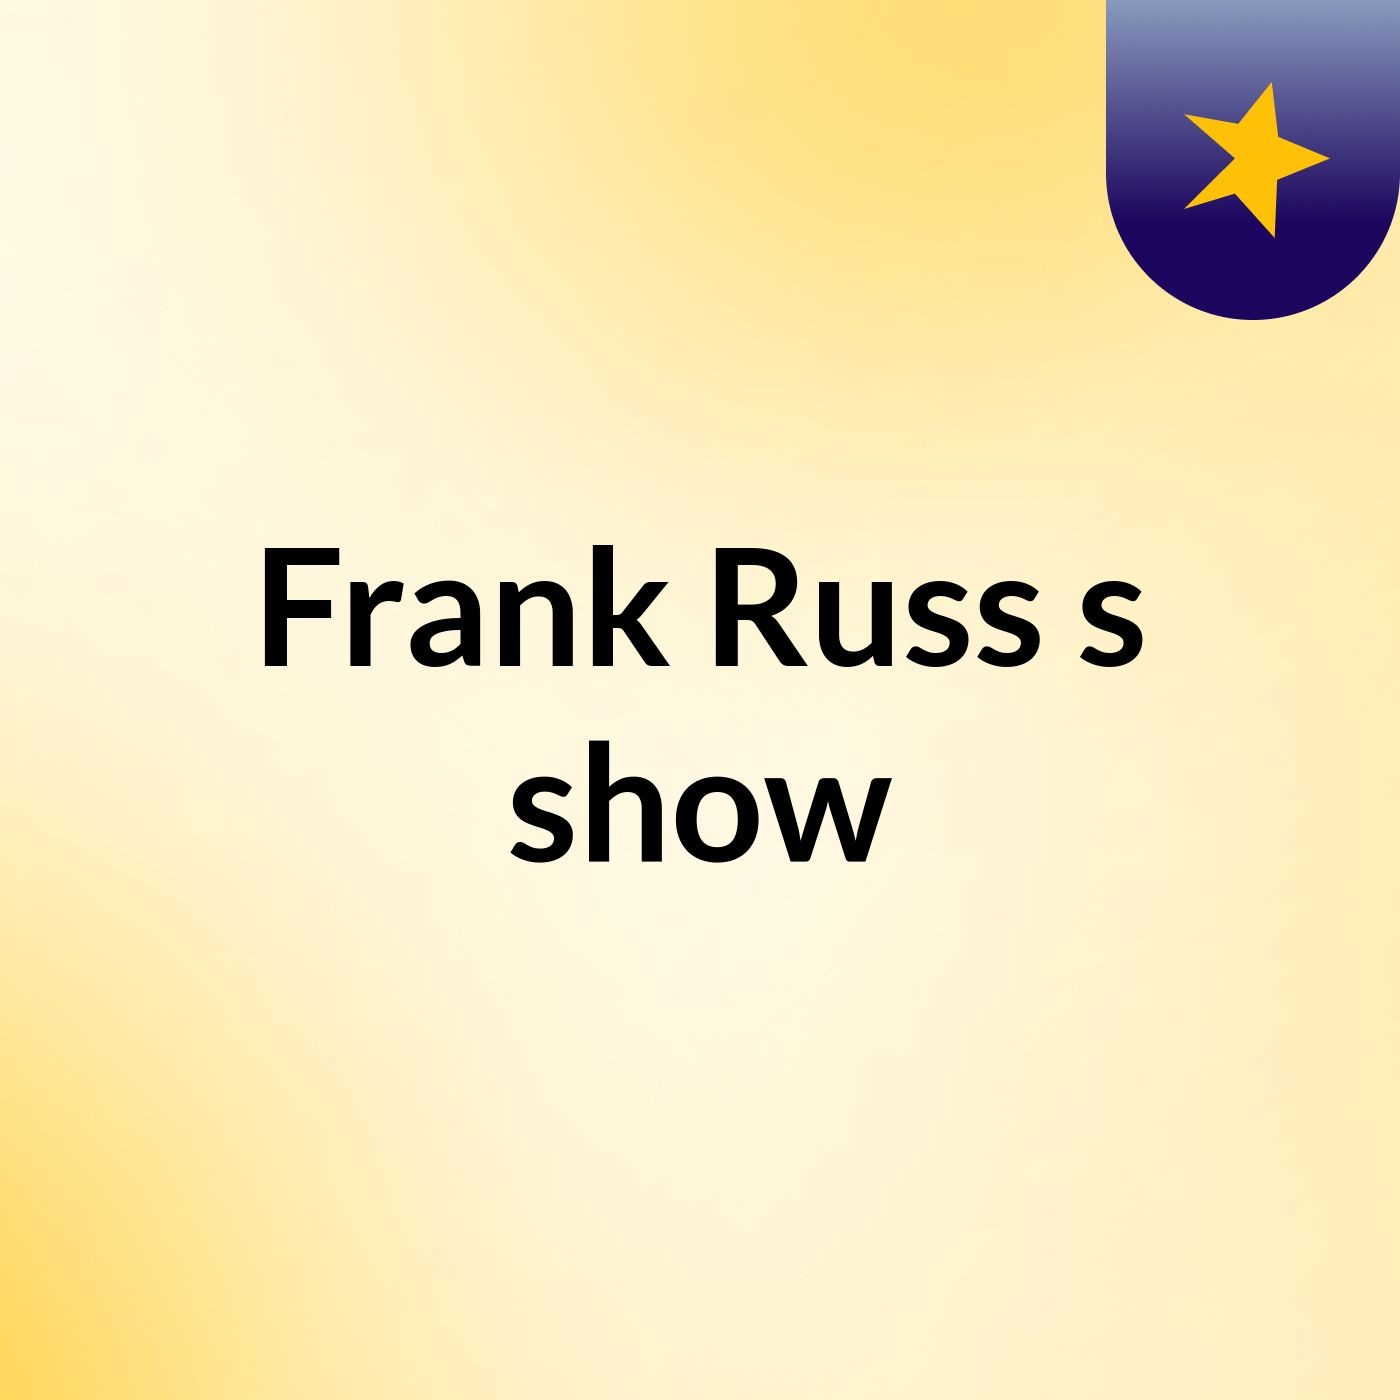 Frank Russ's show